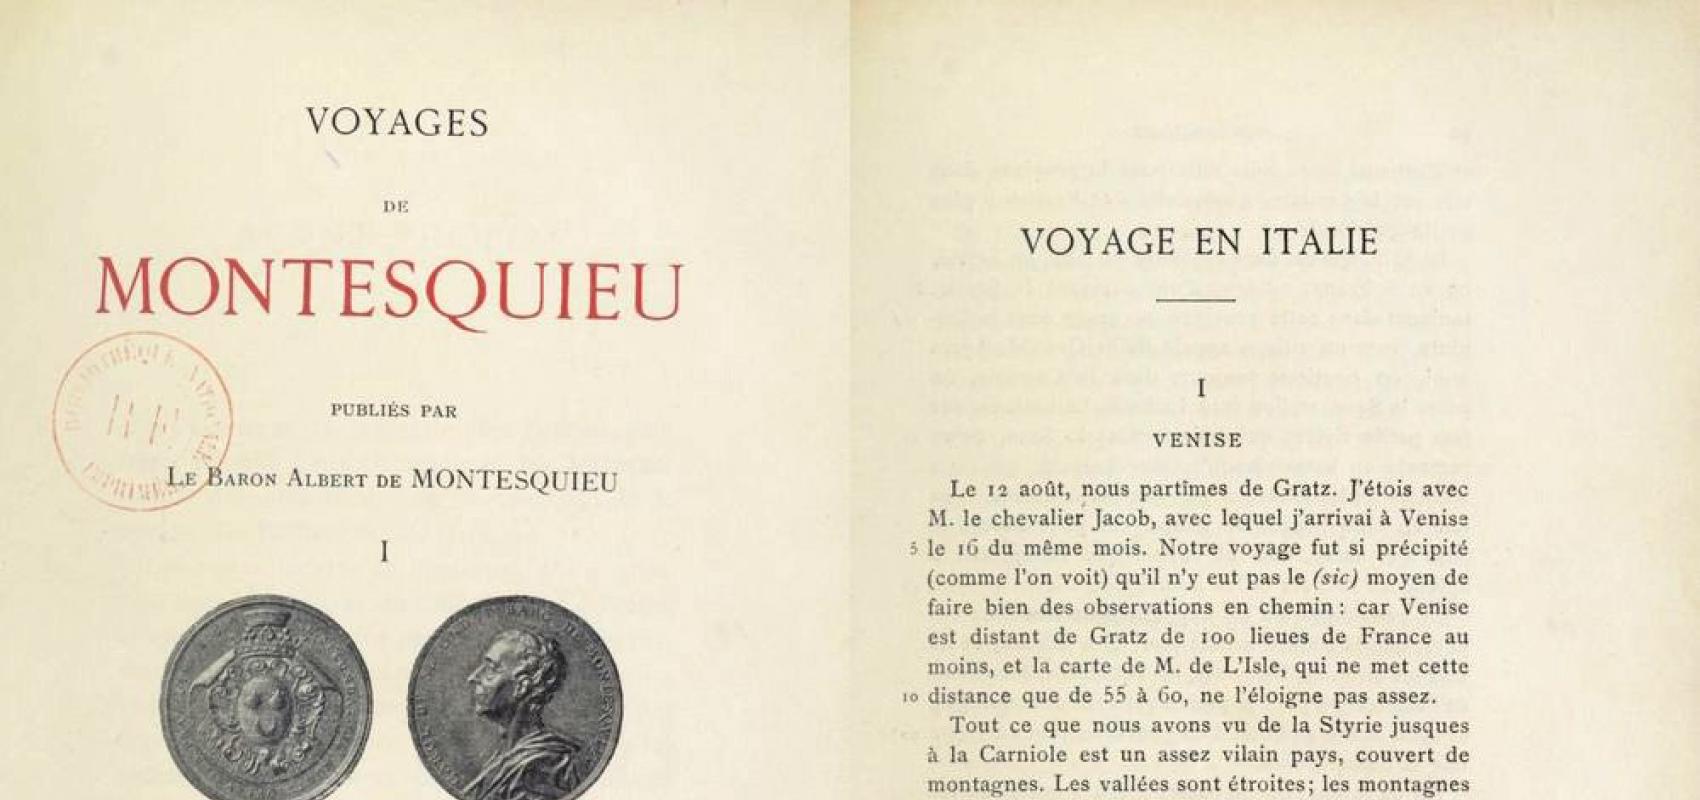 Voyages de Montesquieu, tome 1, publiés par le baron Albert de Montesquieu, 1894-1896 -  - BnF, département Philosophie, histoire, sciences de l'homme